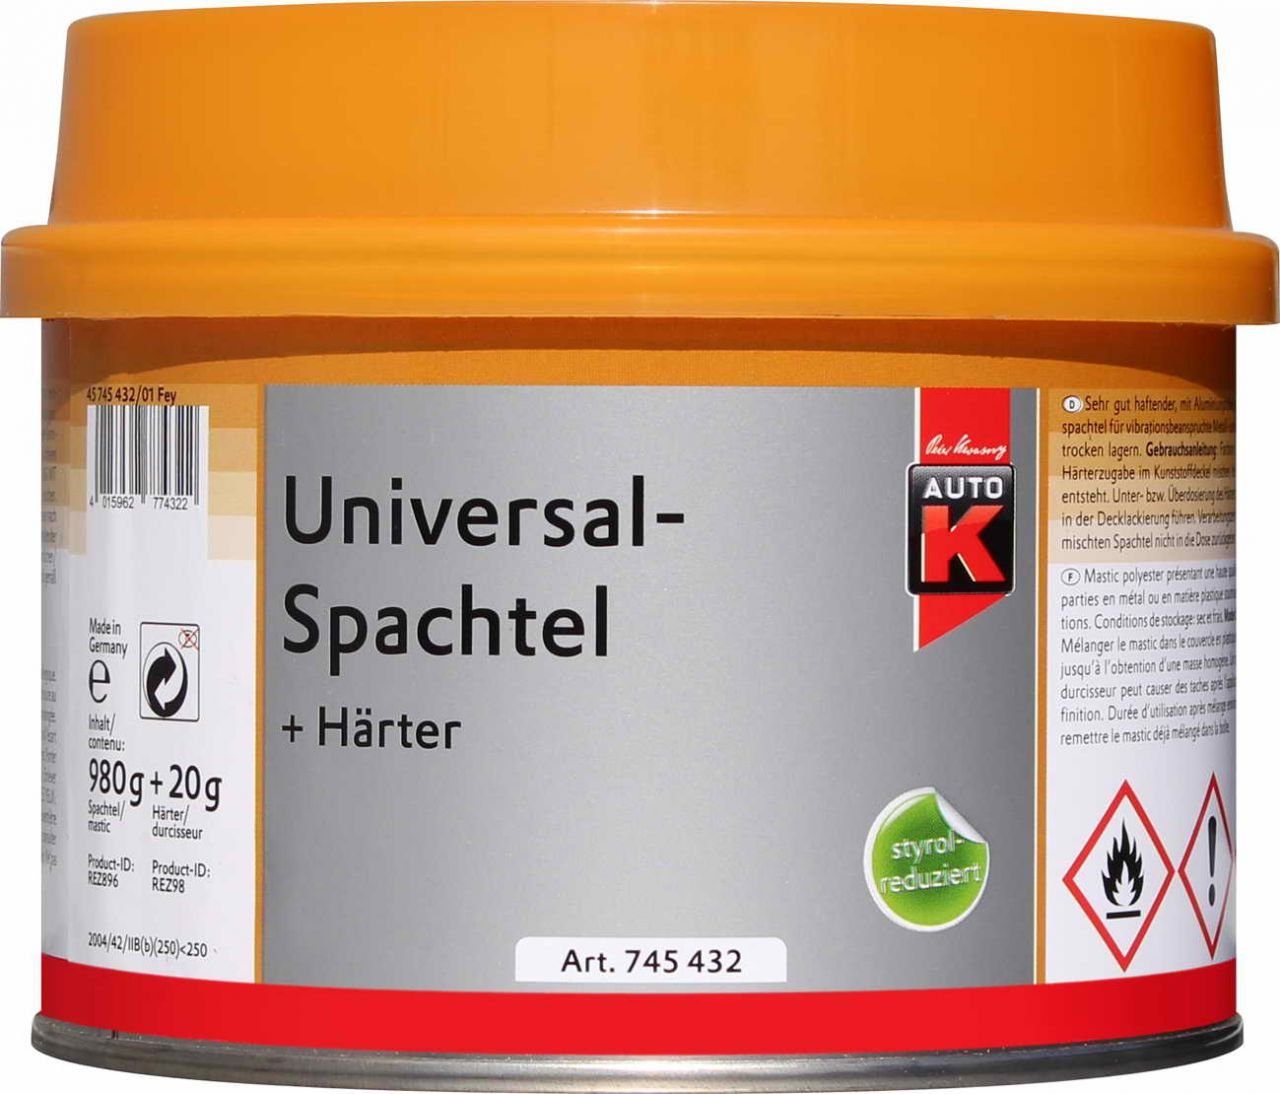 Härter Universalspachtel Auto-K Breitspachtel Auto-K + 1000g